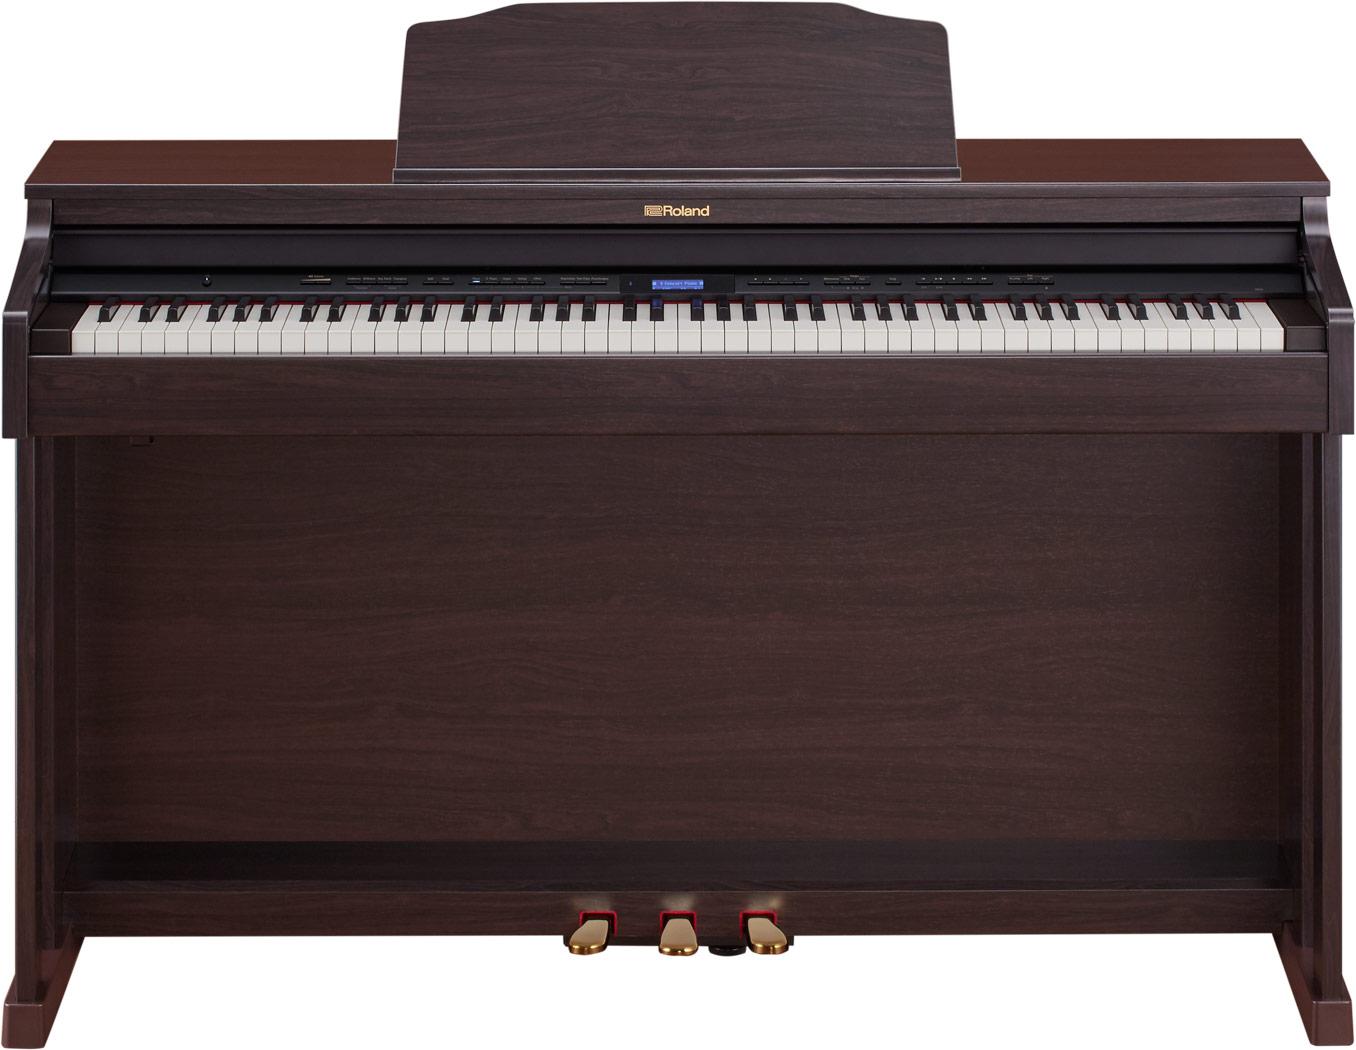 Đàn piano điện Roland HP-601 màu nâu